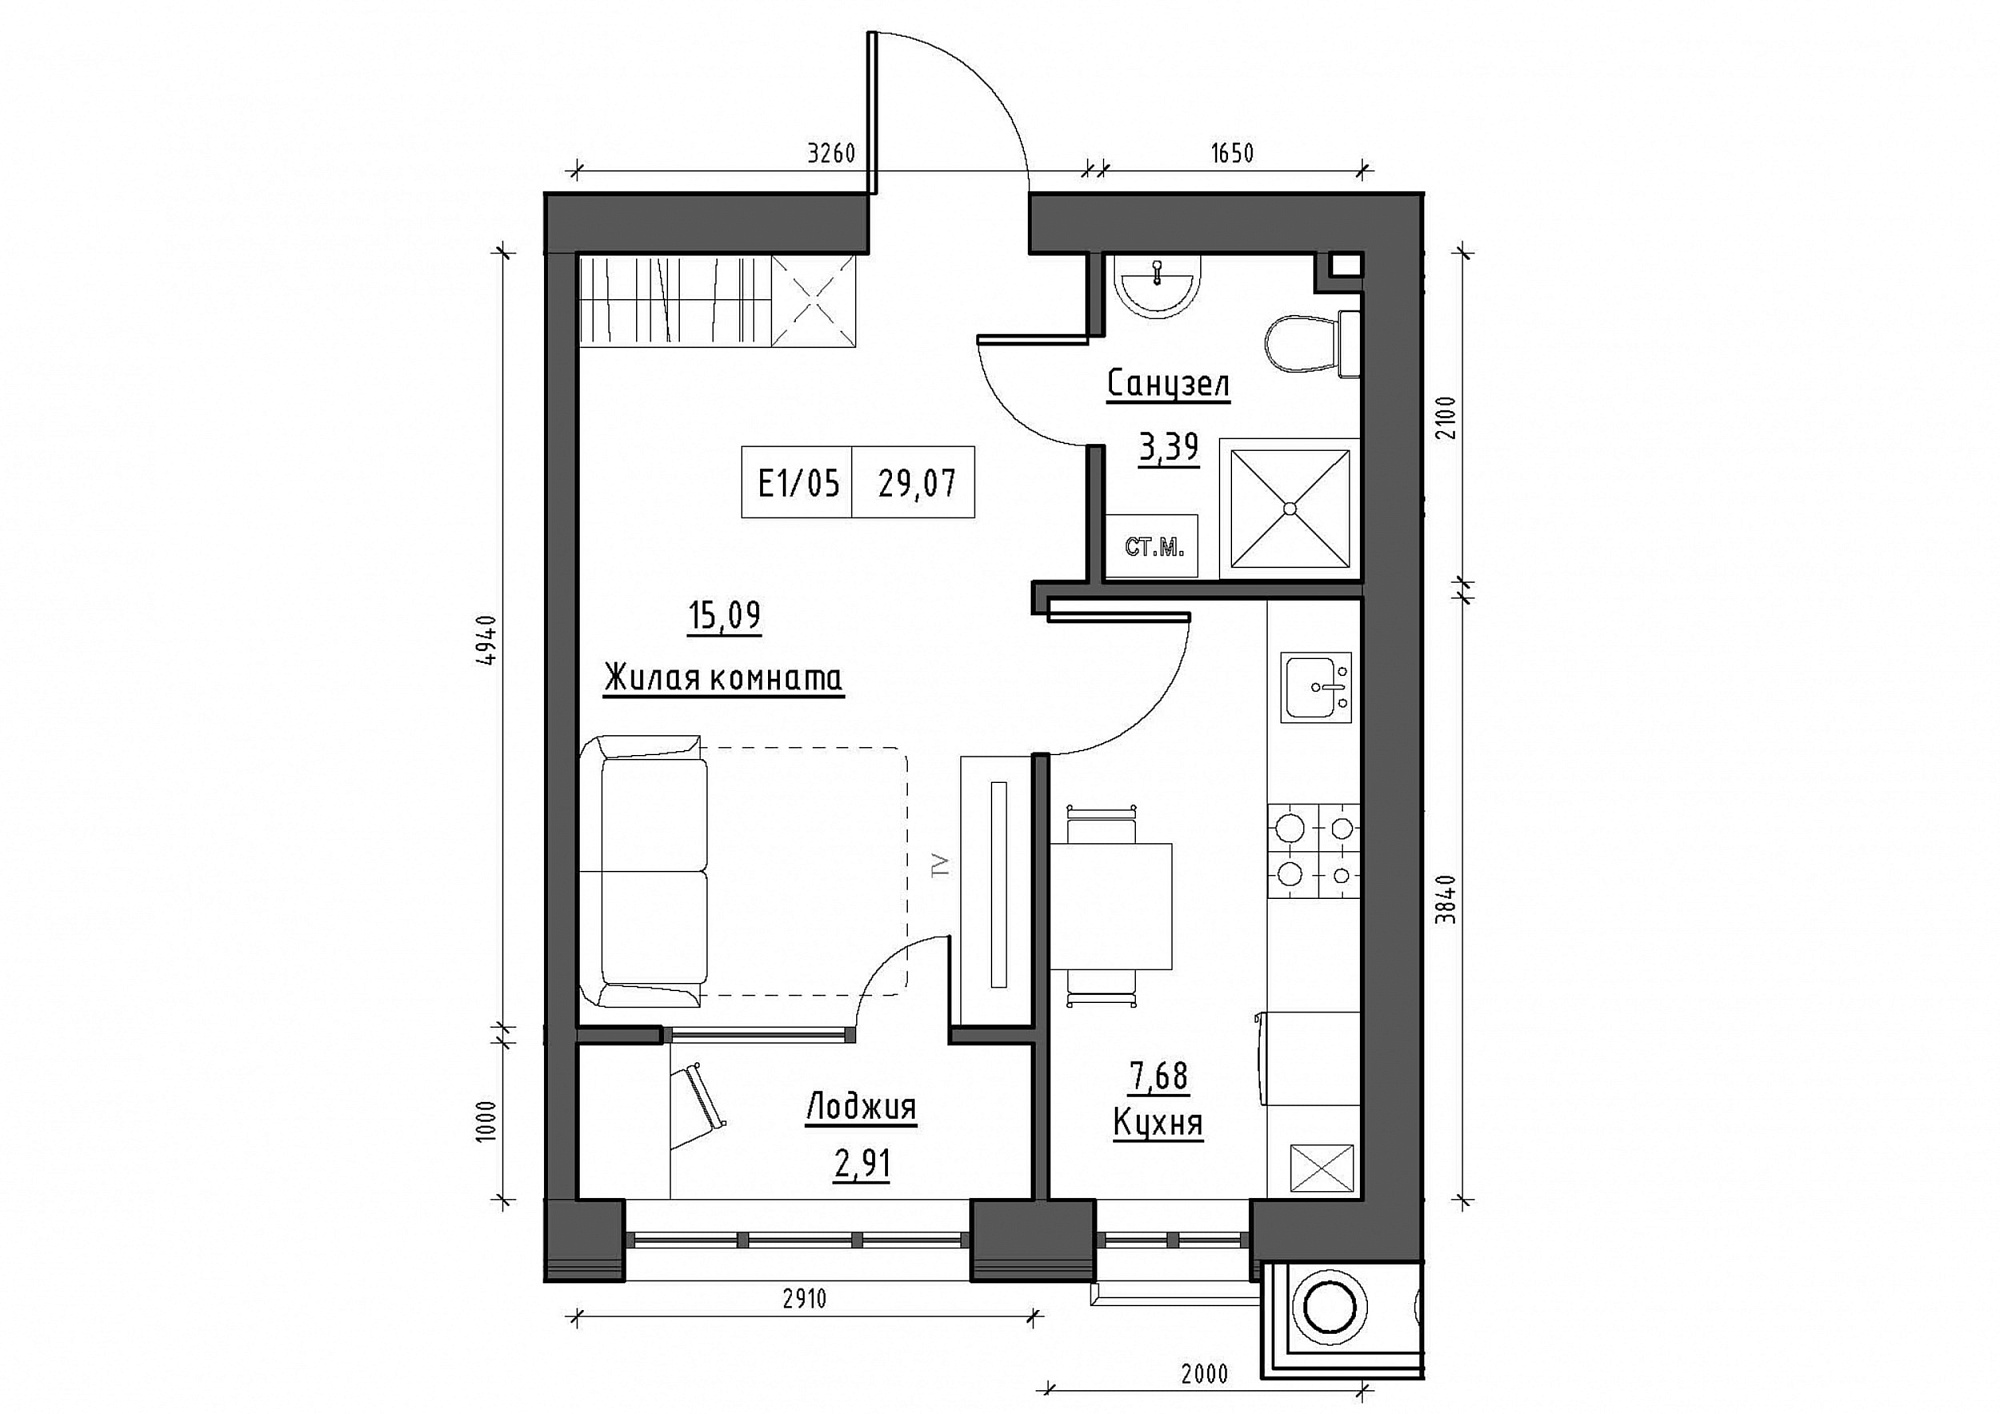 Планування 1-к квартира площею 29.07м2, KS-011-04/0009.